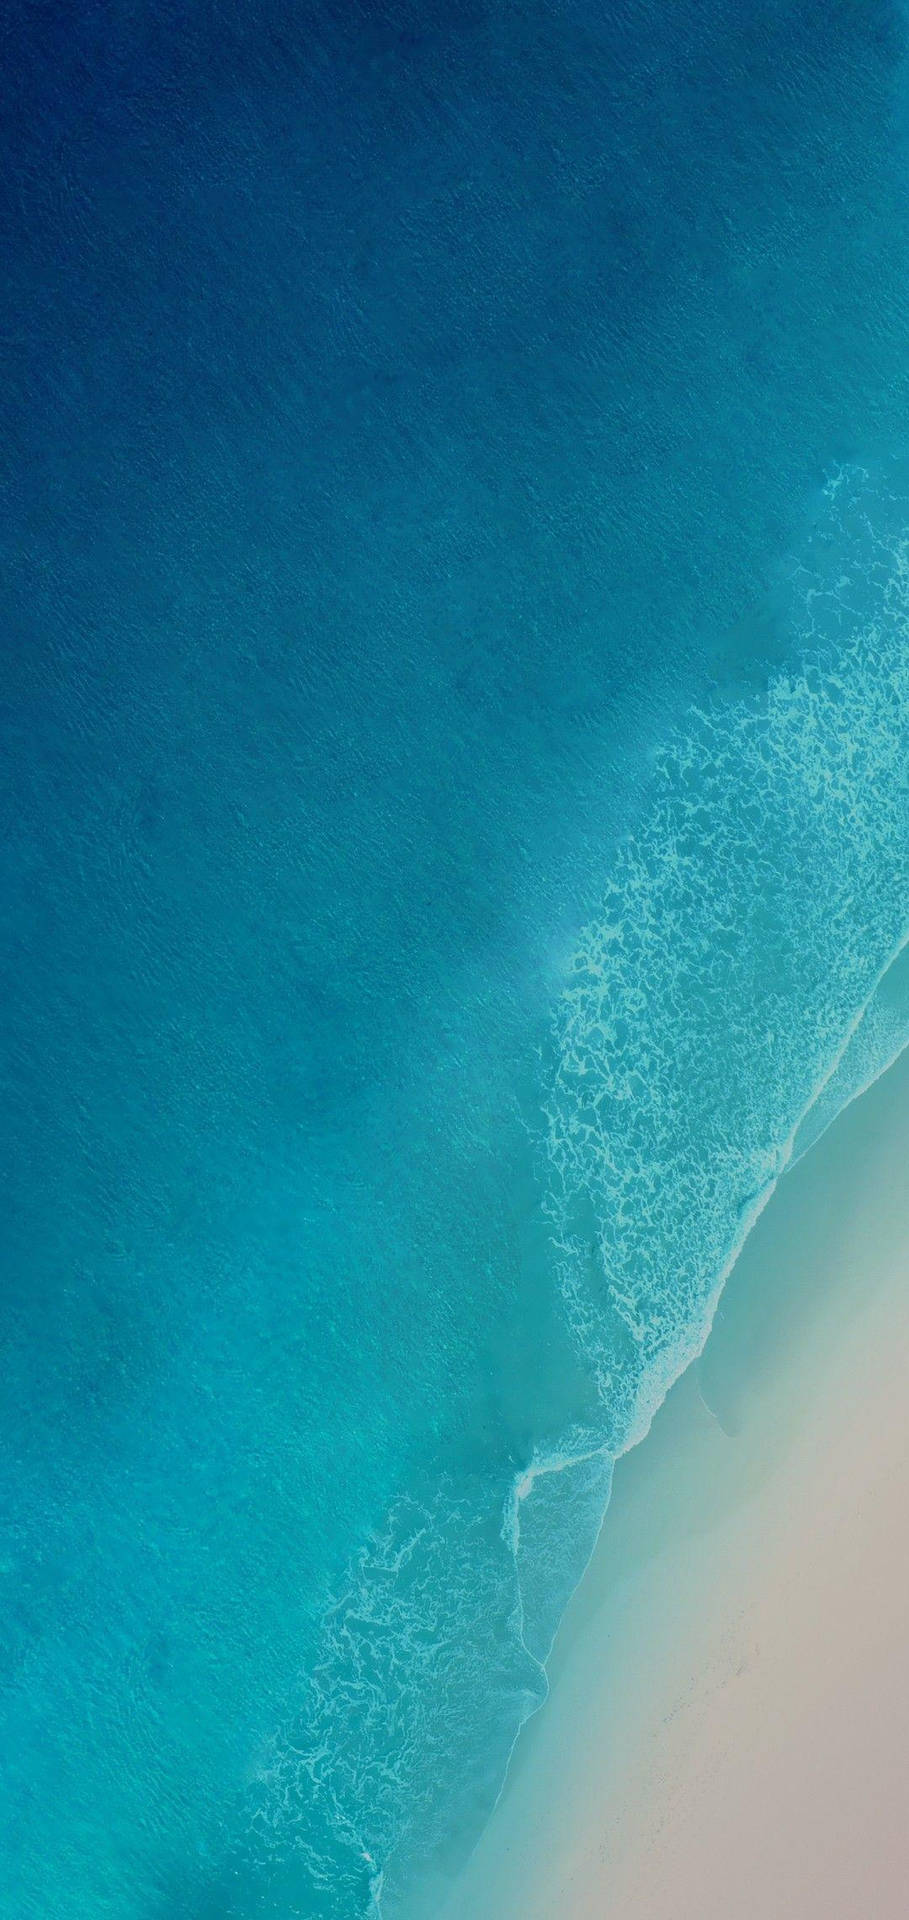 Oversigt af havet iOS 12 tapet Wallpaper